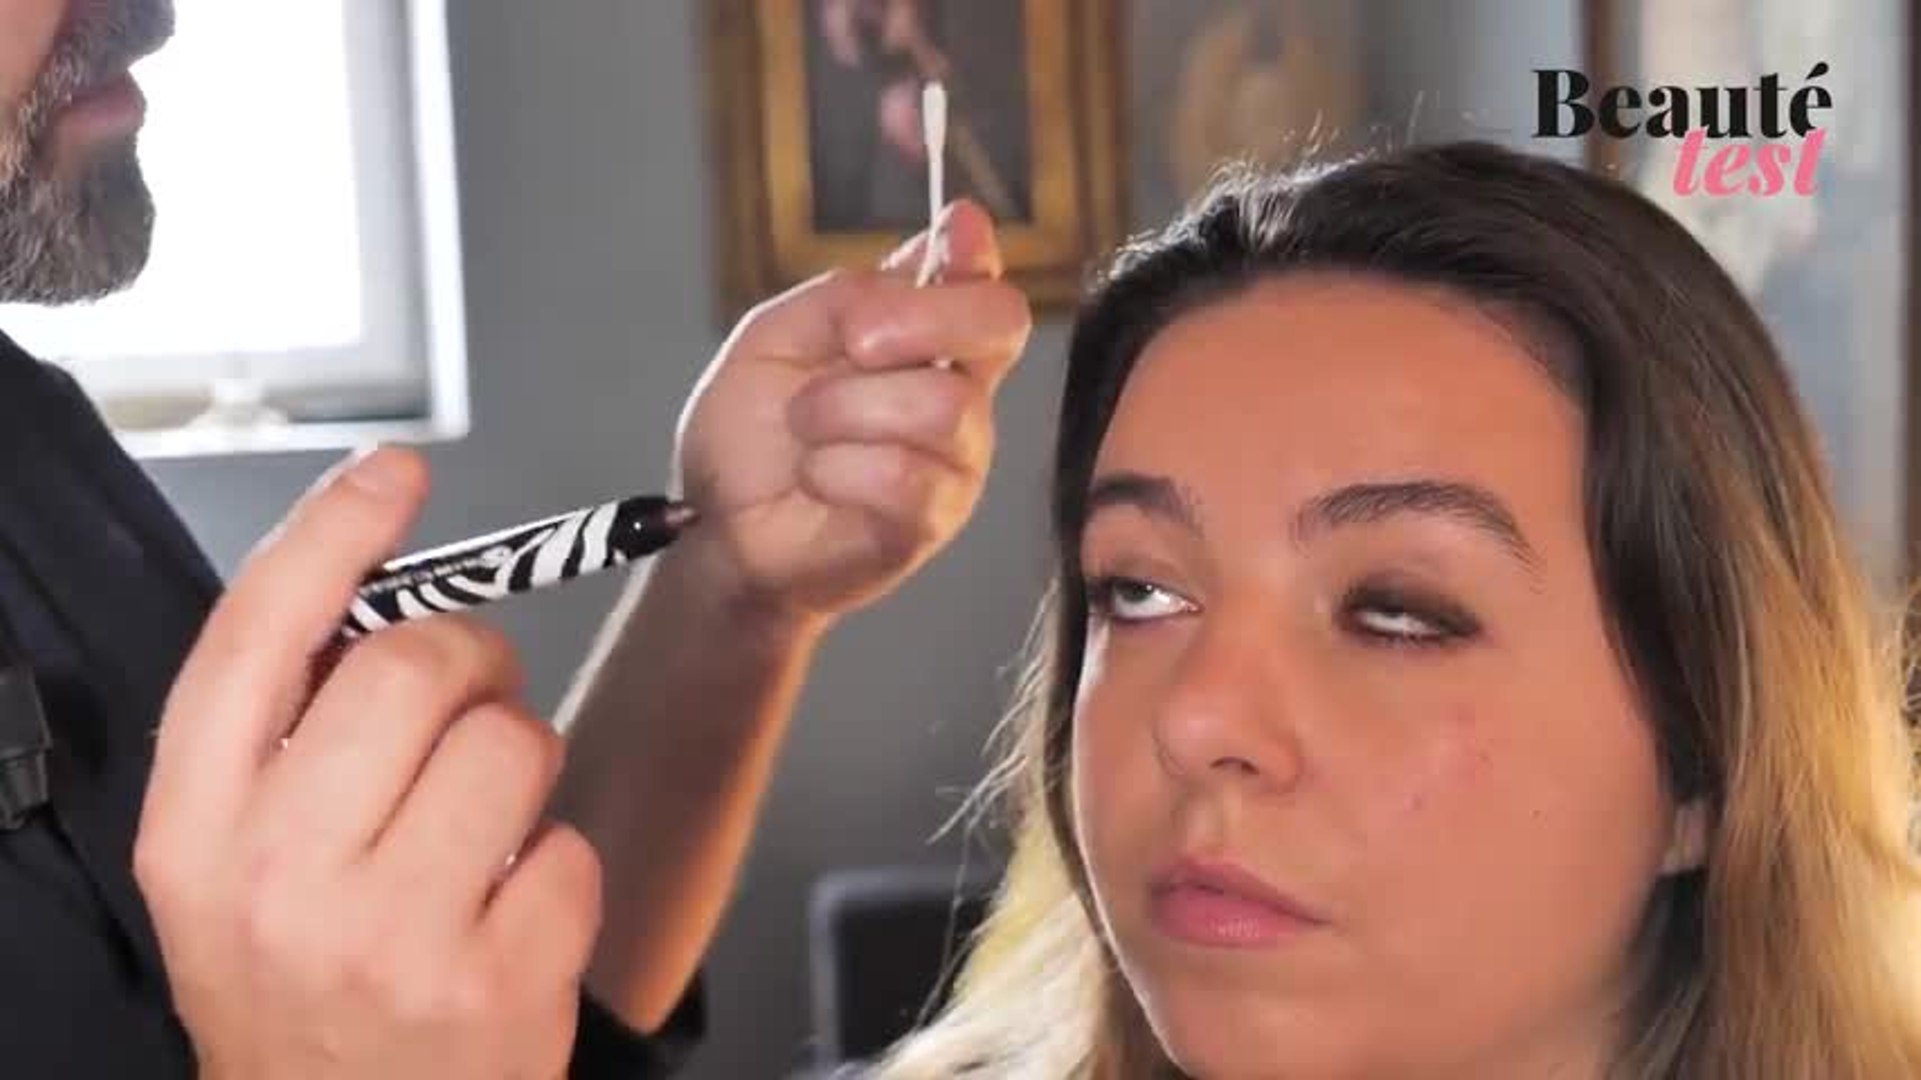 Réaliser un maquillage 100% sans pinceau - Olivier Tissot - Beauté Test -  Vidéo Dailymotion